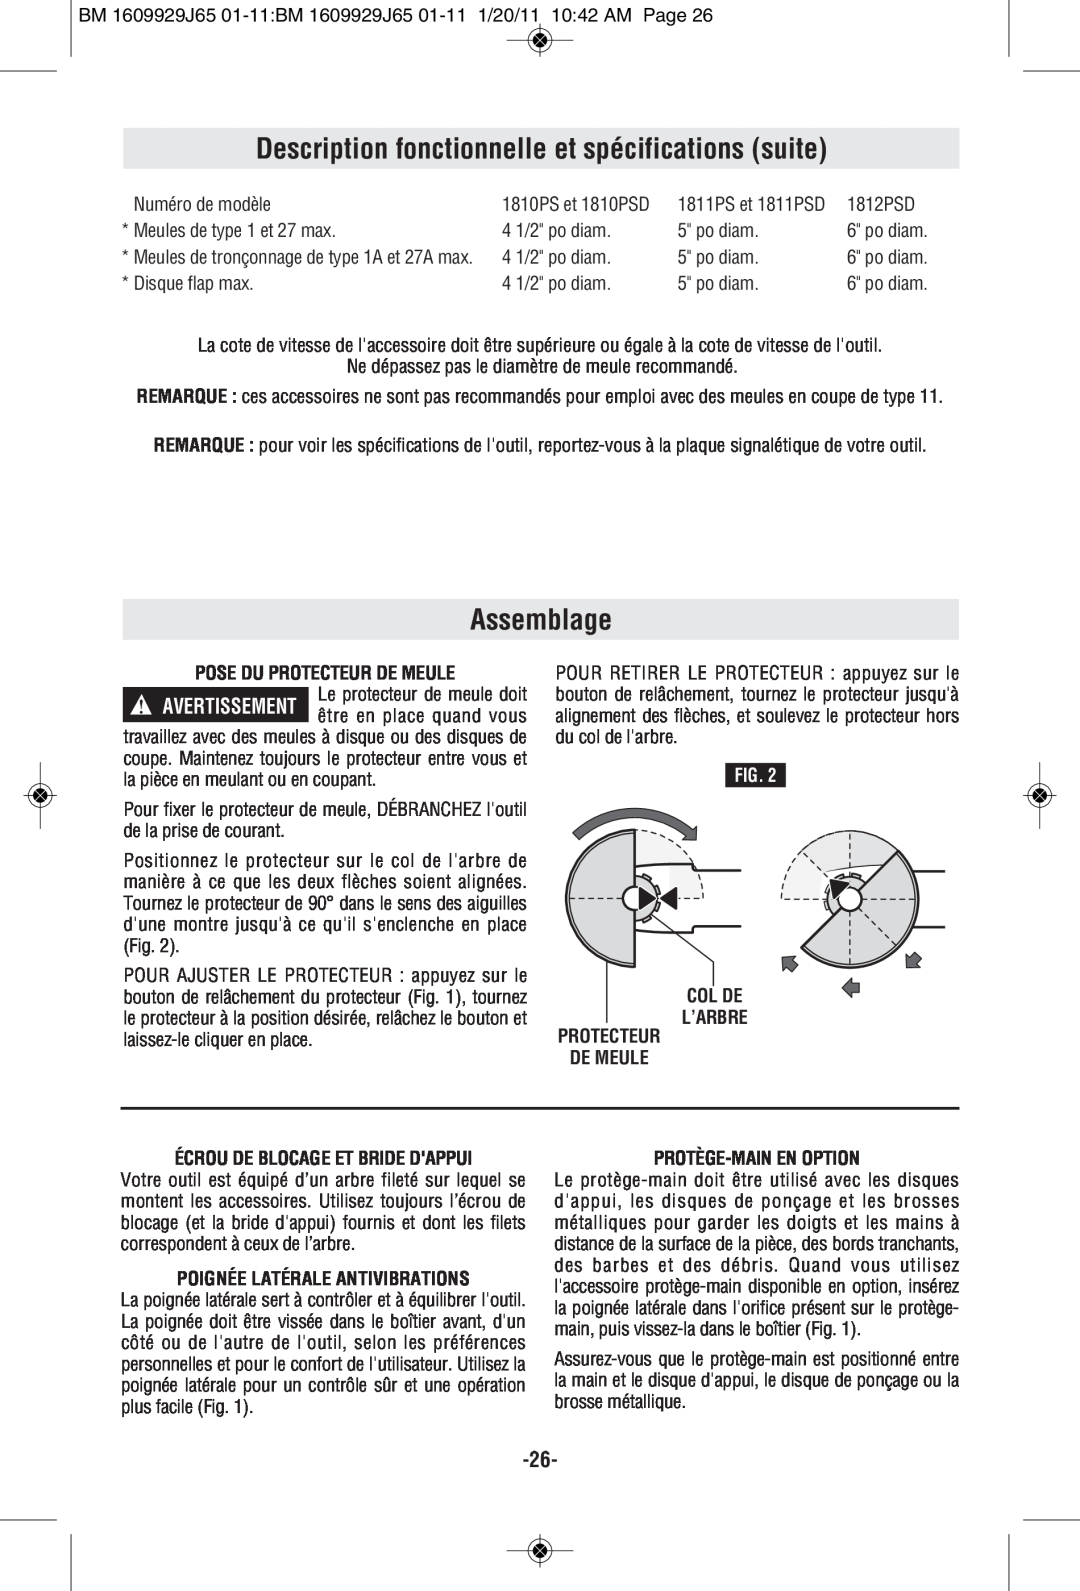 Bosch Power Tools 1811PSD manual Description fonctionnelle et spécifications suite, Assemblage, Pose Du Protecteur De Meule 